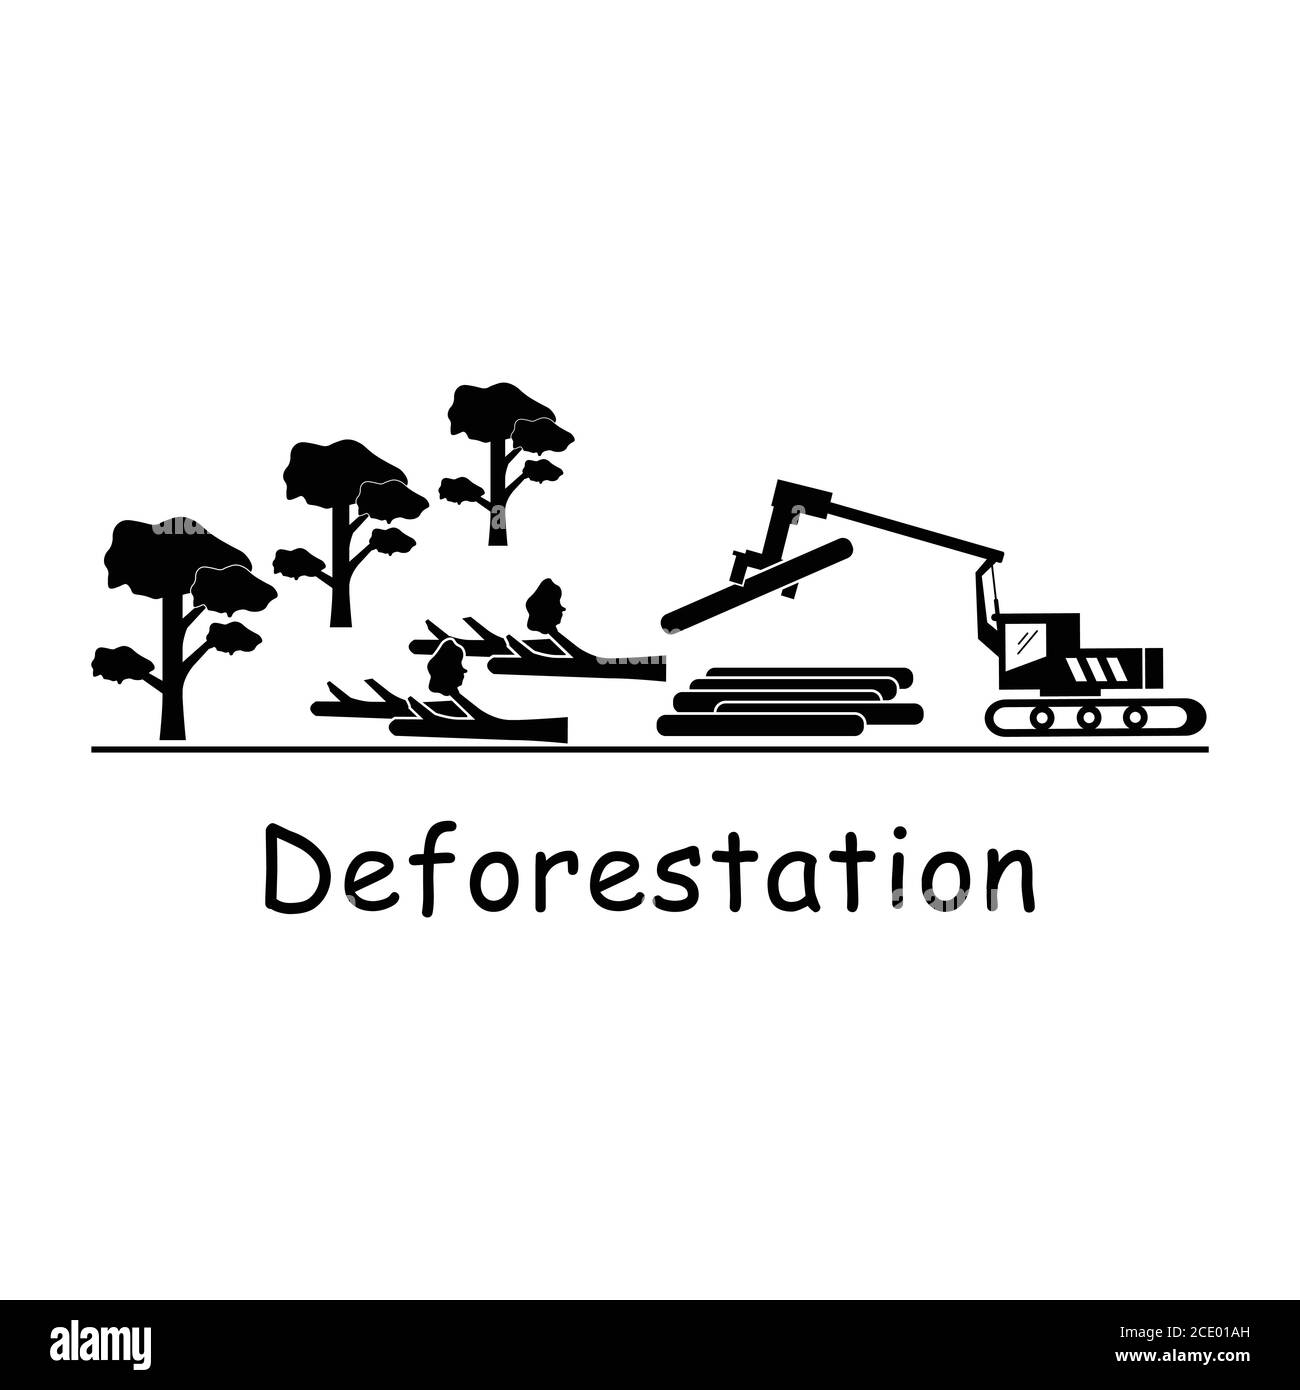 Deforestation Logging. Pictogram depicitng logger logging machine cutting down tress destroying environment deforestation logging. Black and white EPS Stock Vector